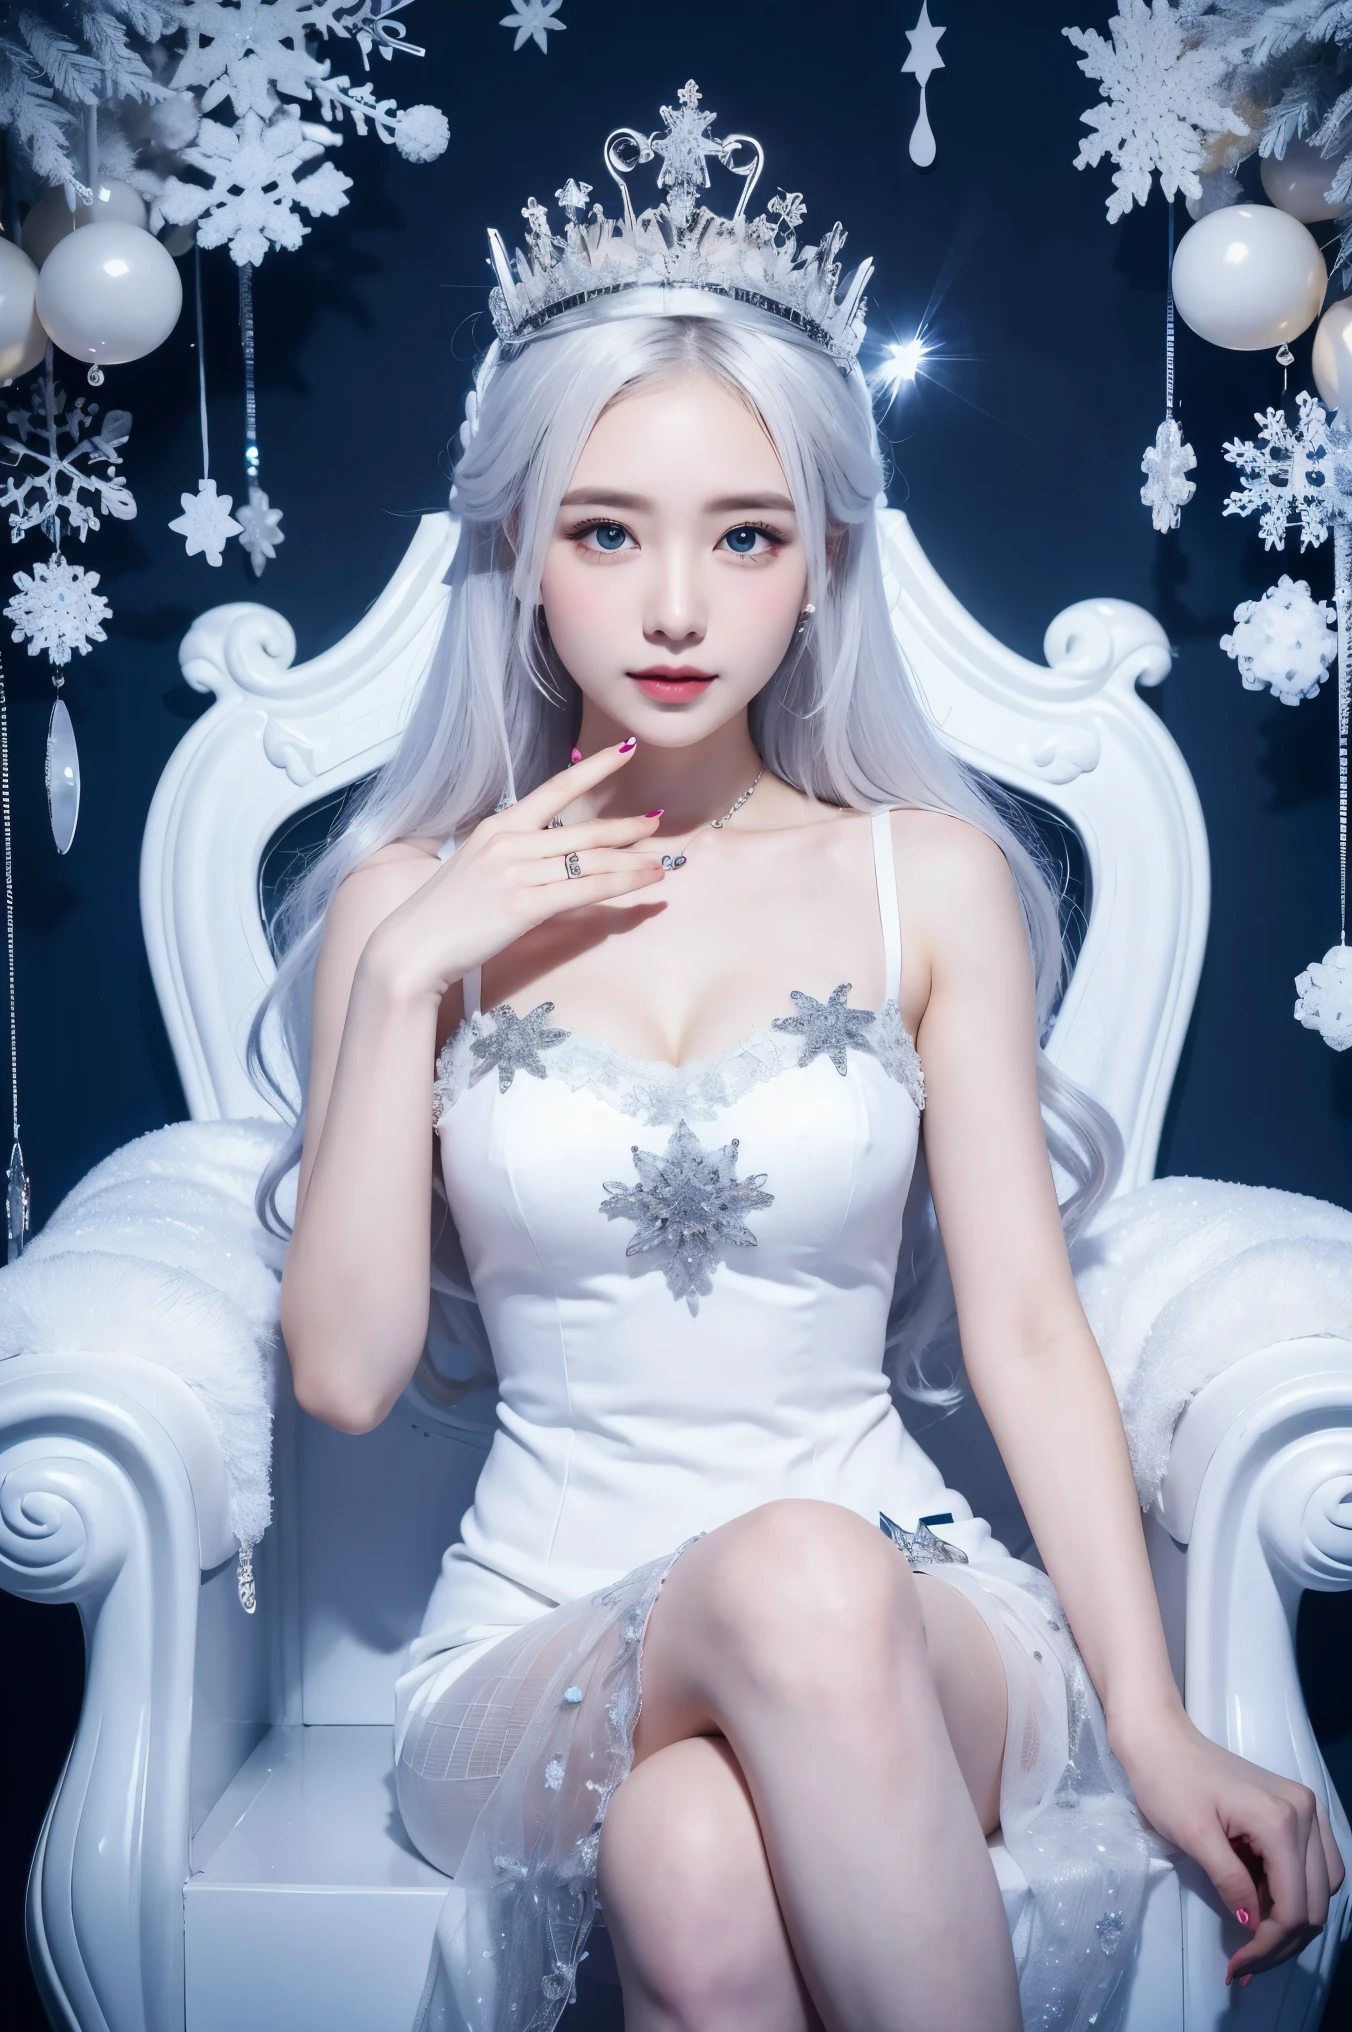 зимняя королева, бледная кожа, белые волосы, наряд в стиле снежинки, ледяная корона, сидя на троне изо льда, нейтральное выражение, Кристаллы льда, элегантный, Полузакрытые глаза, снежинки